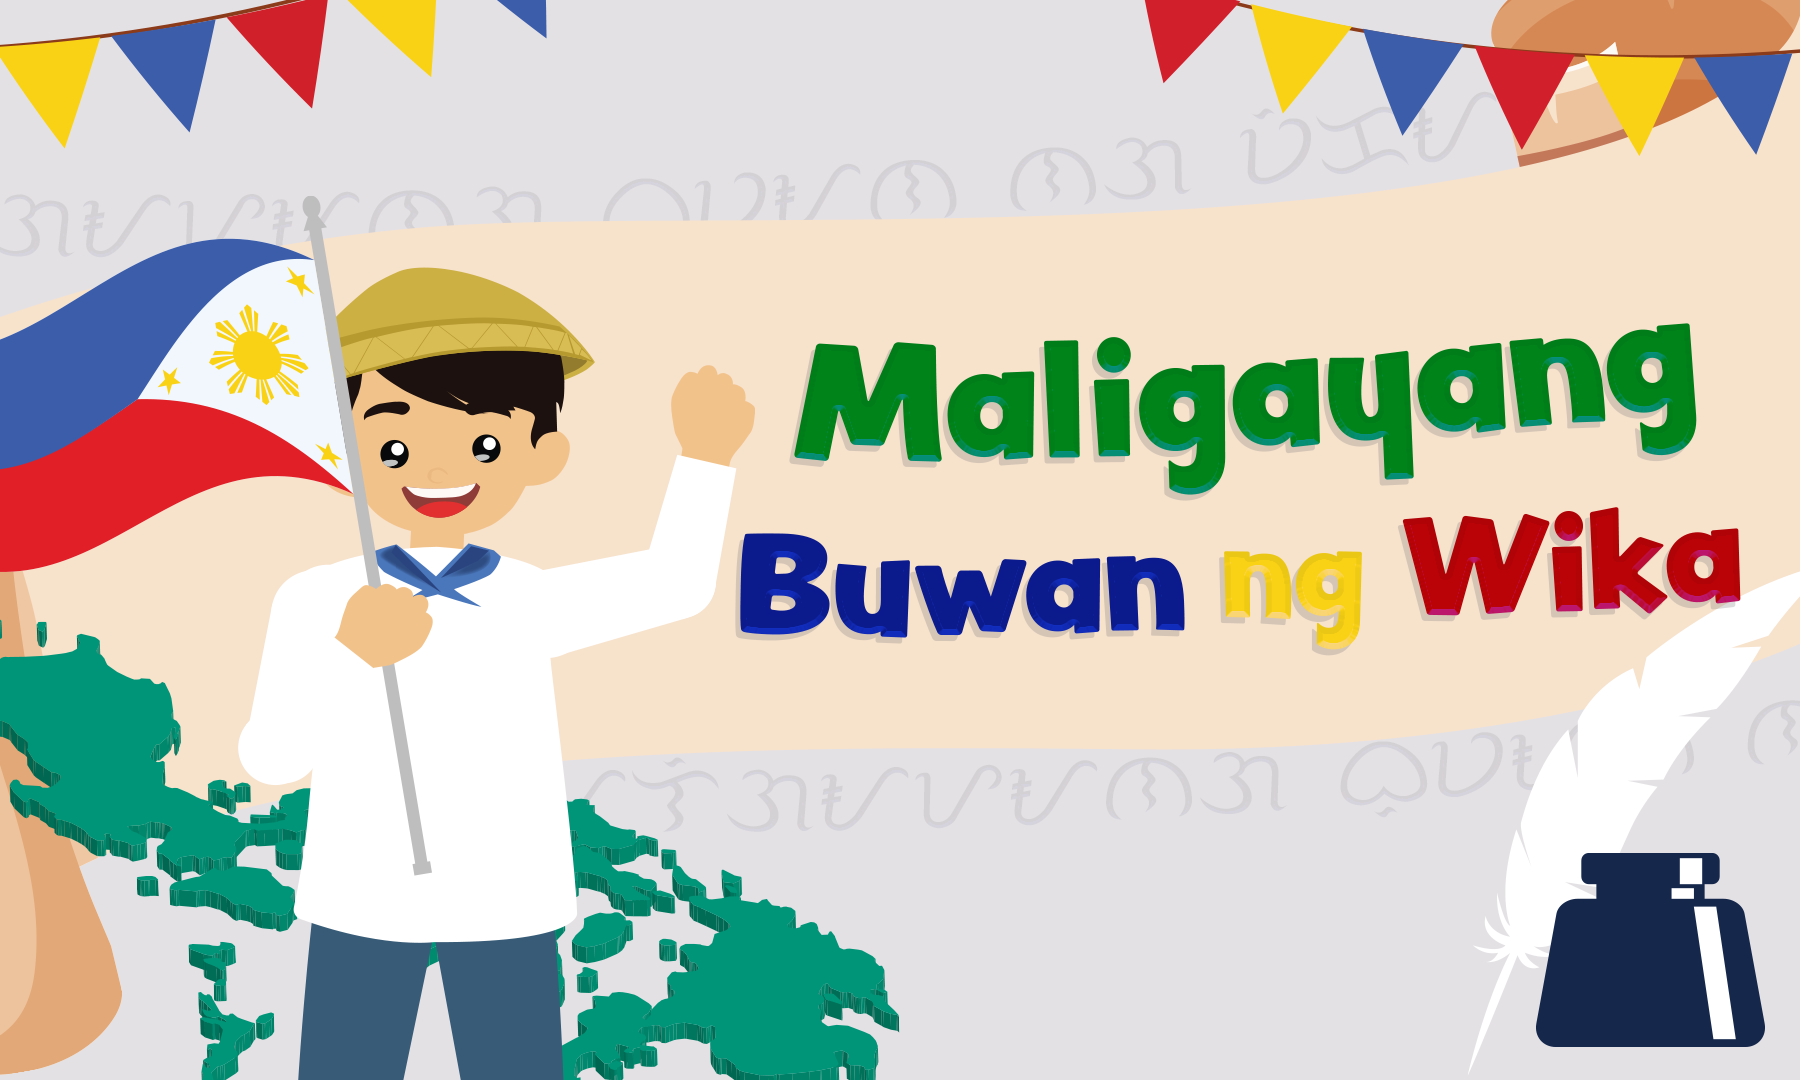 Celebrate Buwan ng Wika | Affordable House and Lot | Lumina Homes